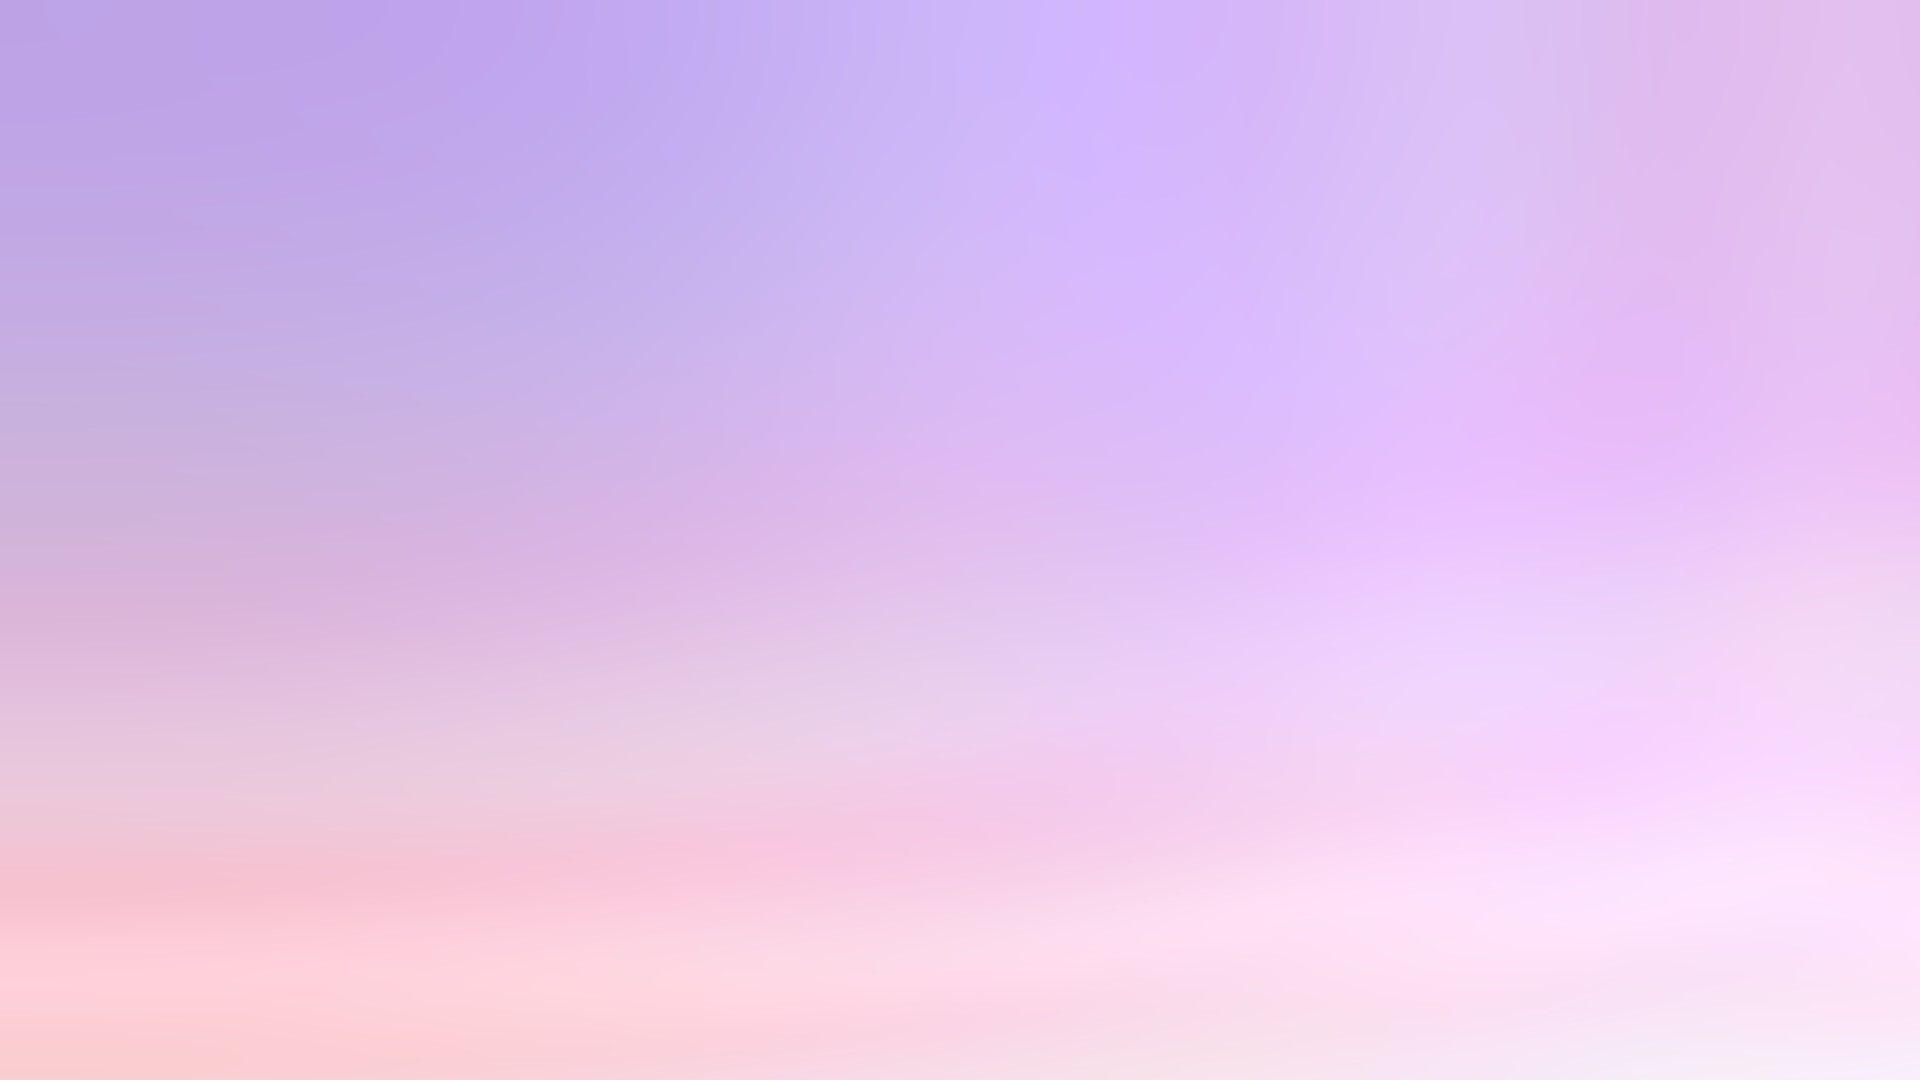 Bộ sưu tập hình nền desktop màu tím nhạt là lựa chọn hoàn hảo cho những ai yêu thích sự tinh tế và thích màu sắc nhẹ nhàng. Những hình ảnh sẽ mang đến cho bạn sự độc đáo và sáng tạo, khiến cho màn hình desktop của bạn trở nên lung linh và thu hút.